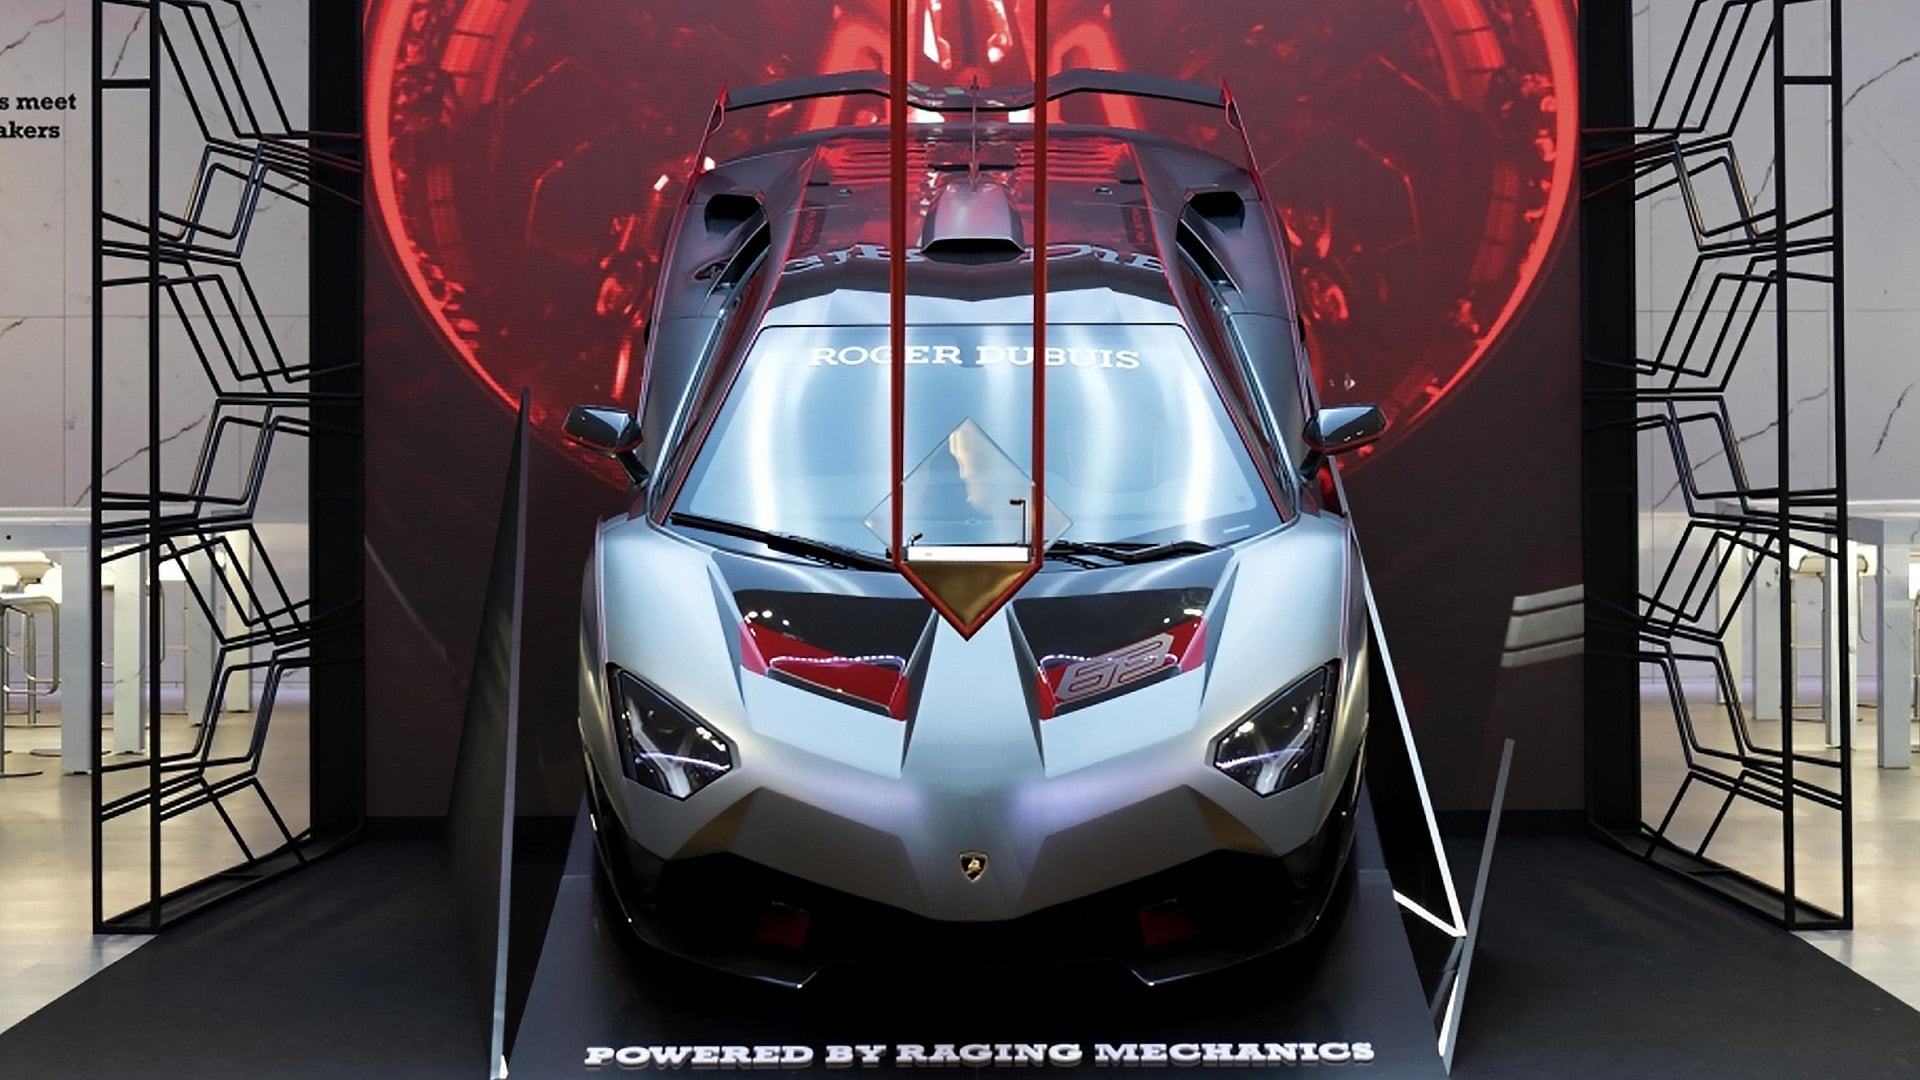 Roger Dubuis SIHH 2019 - Lamborghini 1